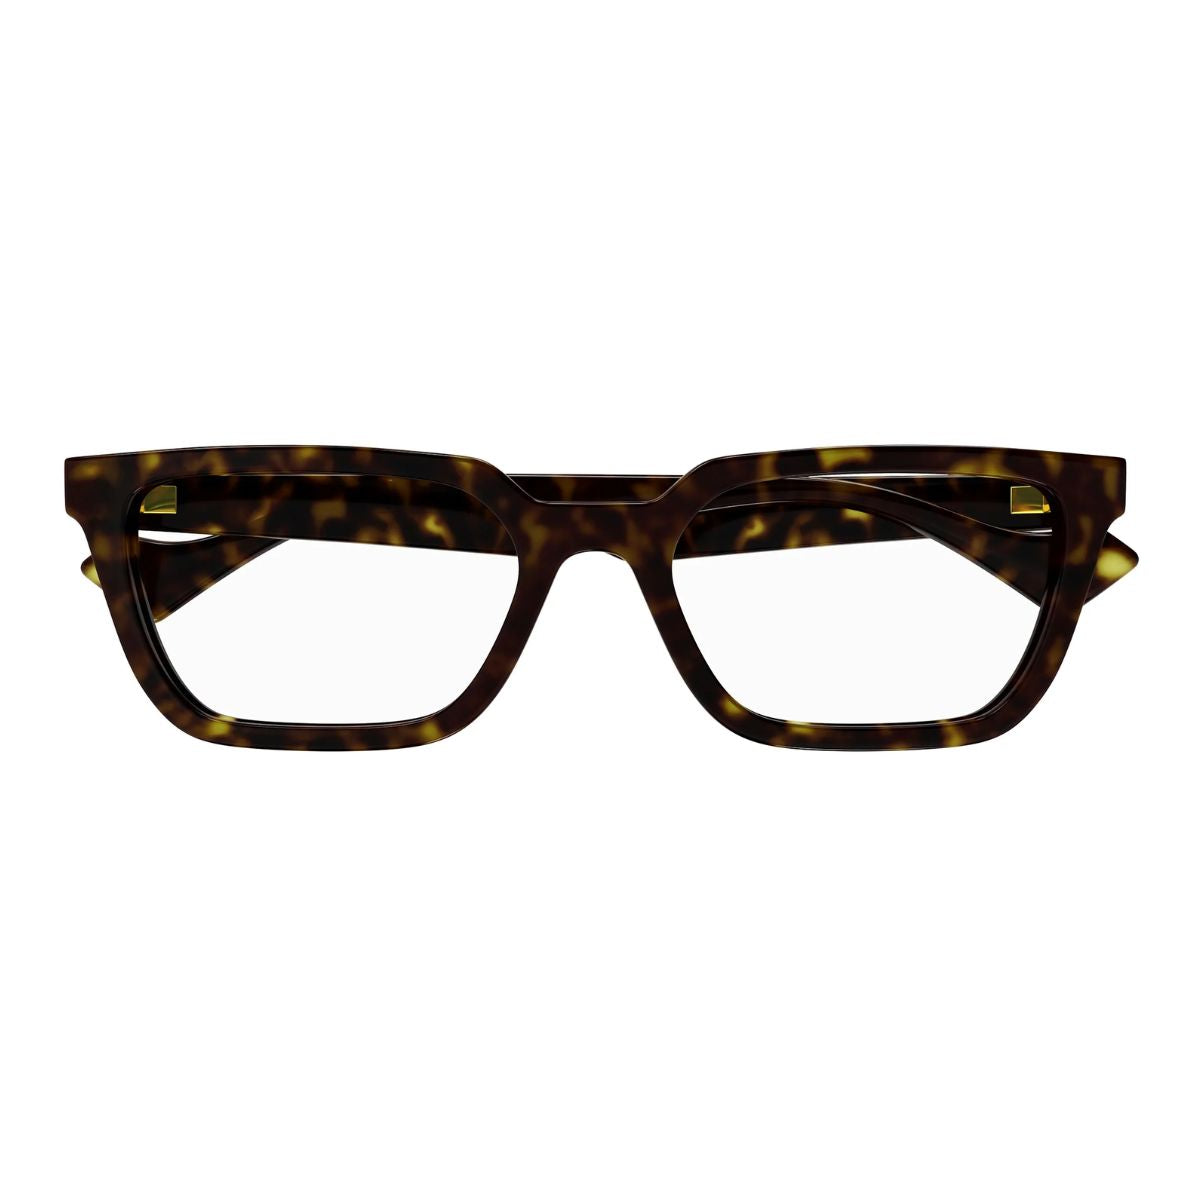 "Designer Gucci 1539O 002 Eyeglasses Frames"